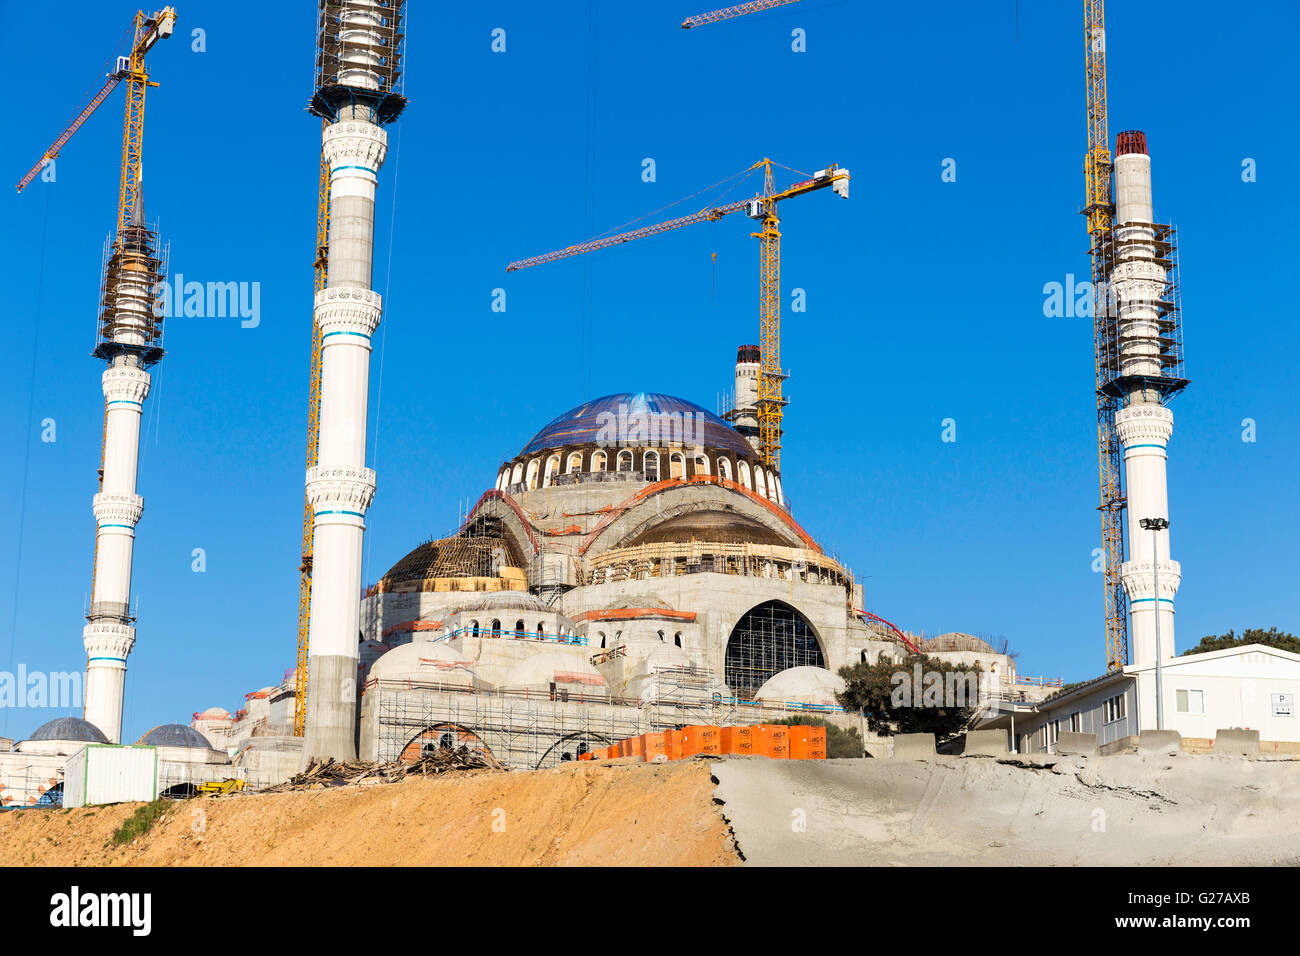 Nouvelle Mosquée Camlica libre, Camlica Cami en turc. Camlica mosquée est toujours en construction. Banque D'Images